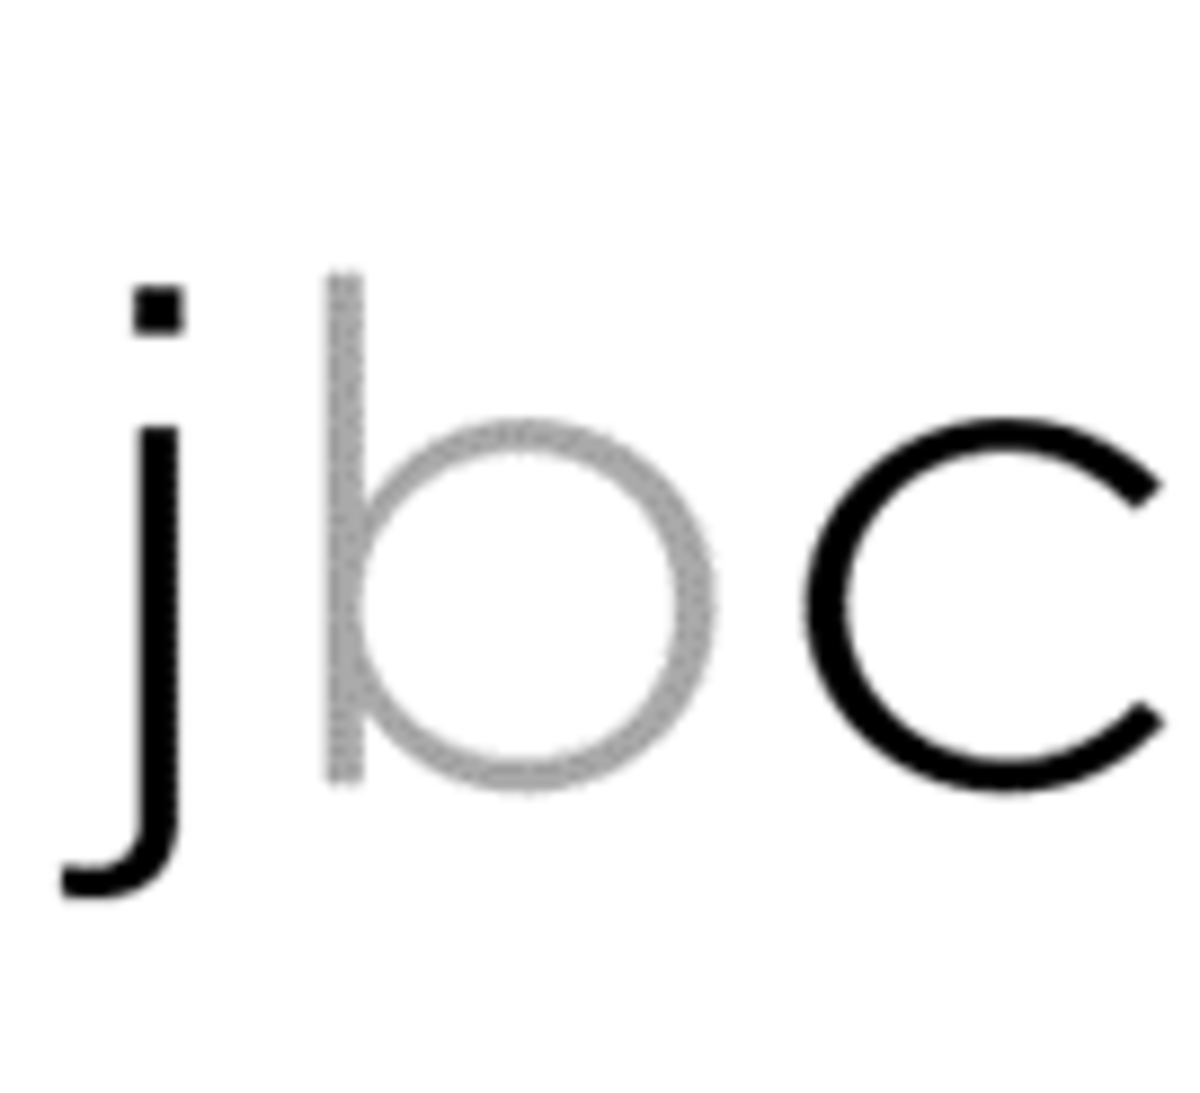 jbc logo